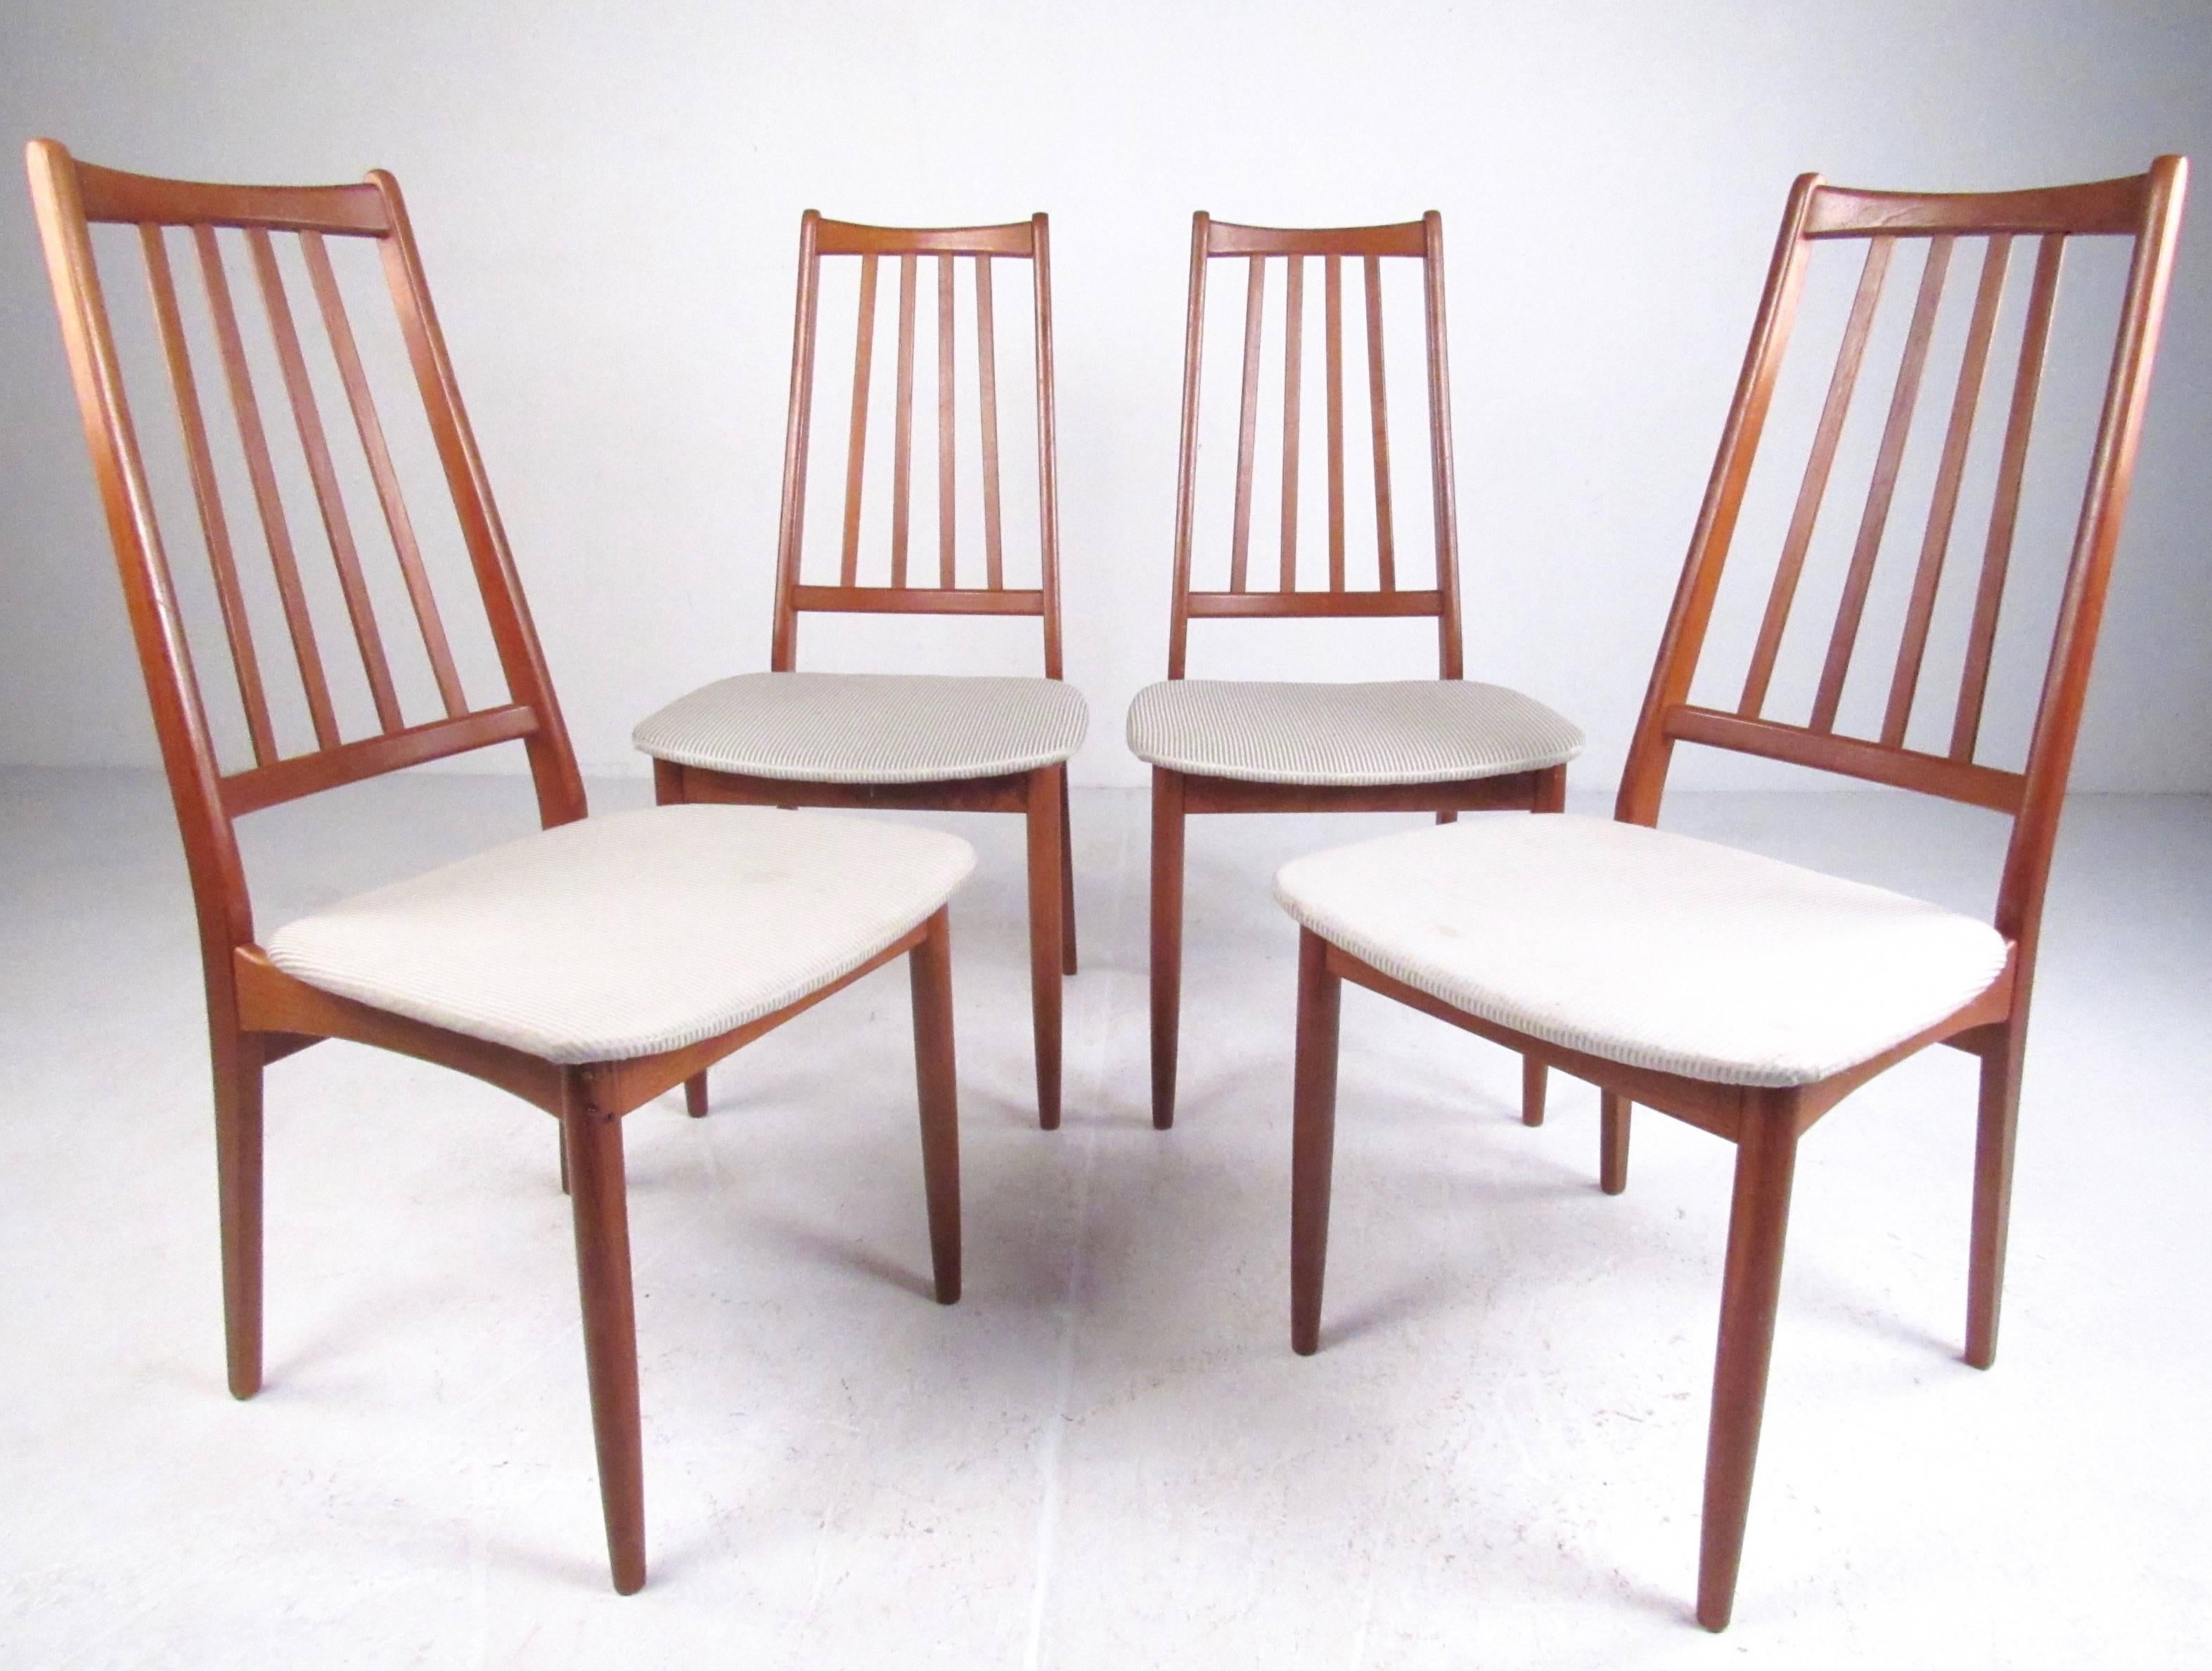 Cet ensemble de quatre chaises de salle à manger en teck aux lignes pures et élancées présente un design statuaire à haut dossier avec des rayons sculptés. Les sièges rembourrés forment un joli contraste avec la riche finition en teck, tandis que